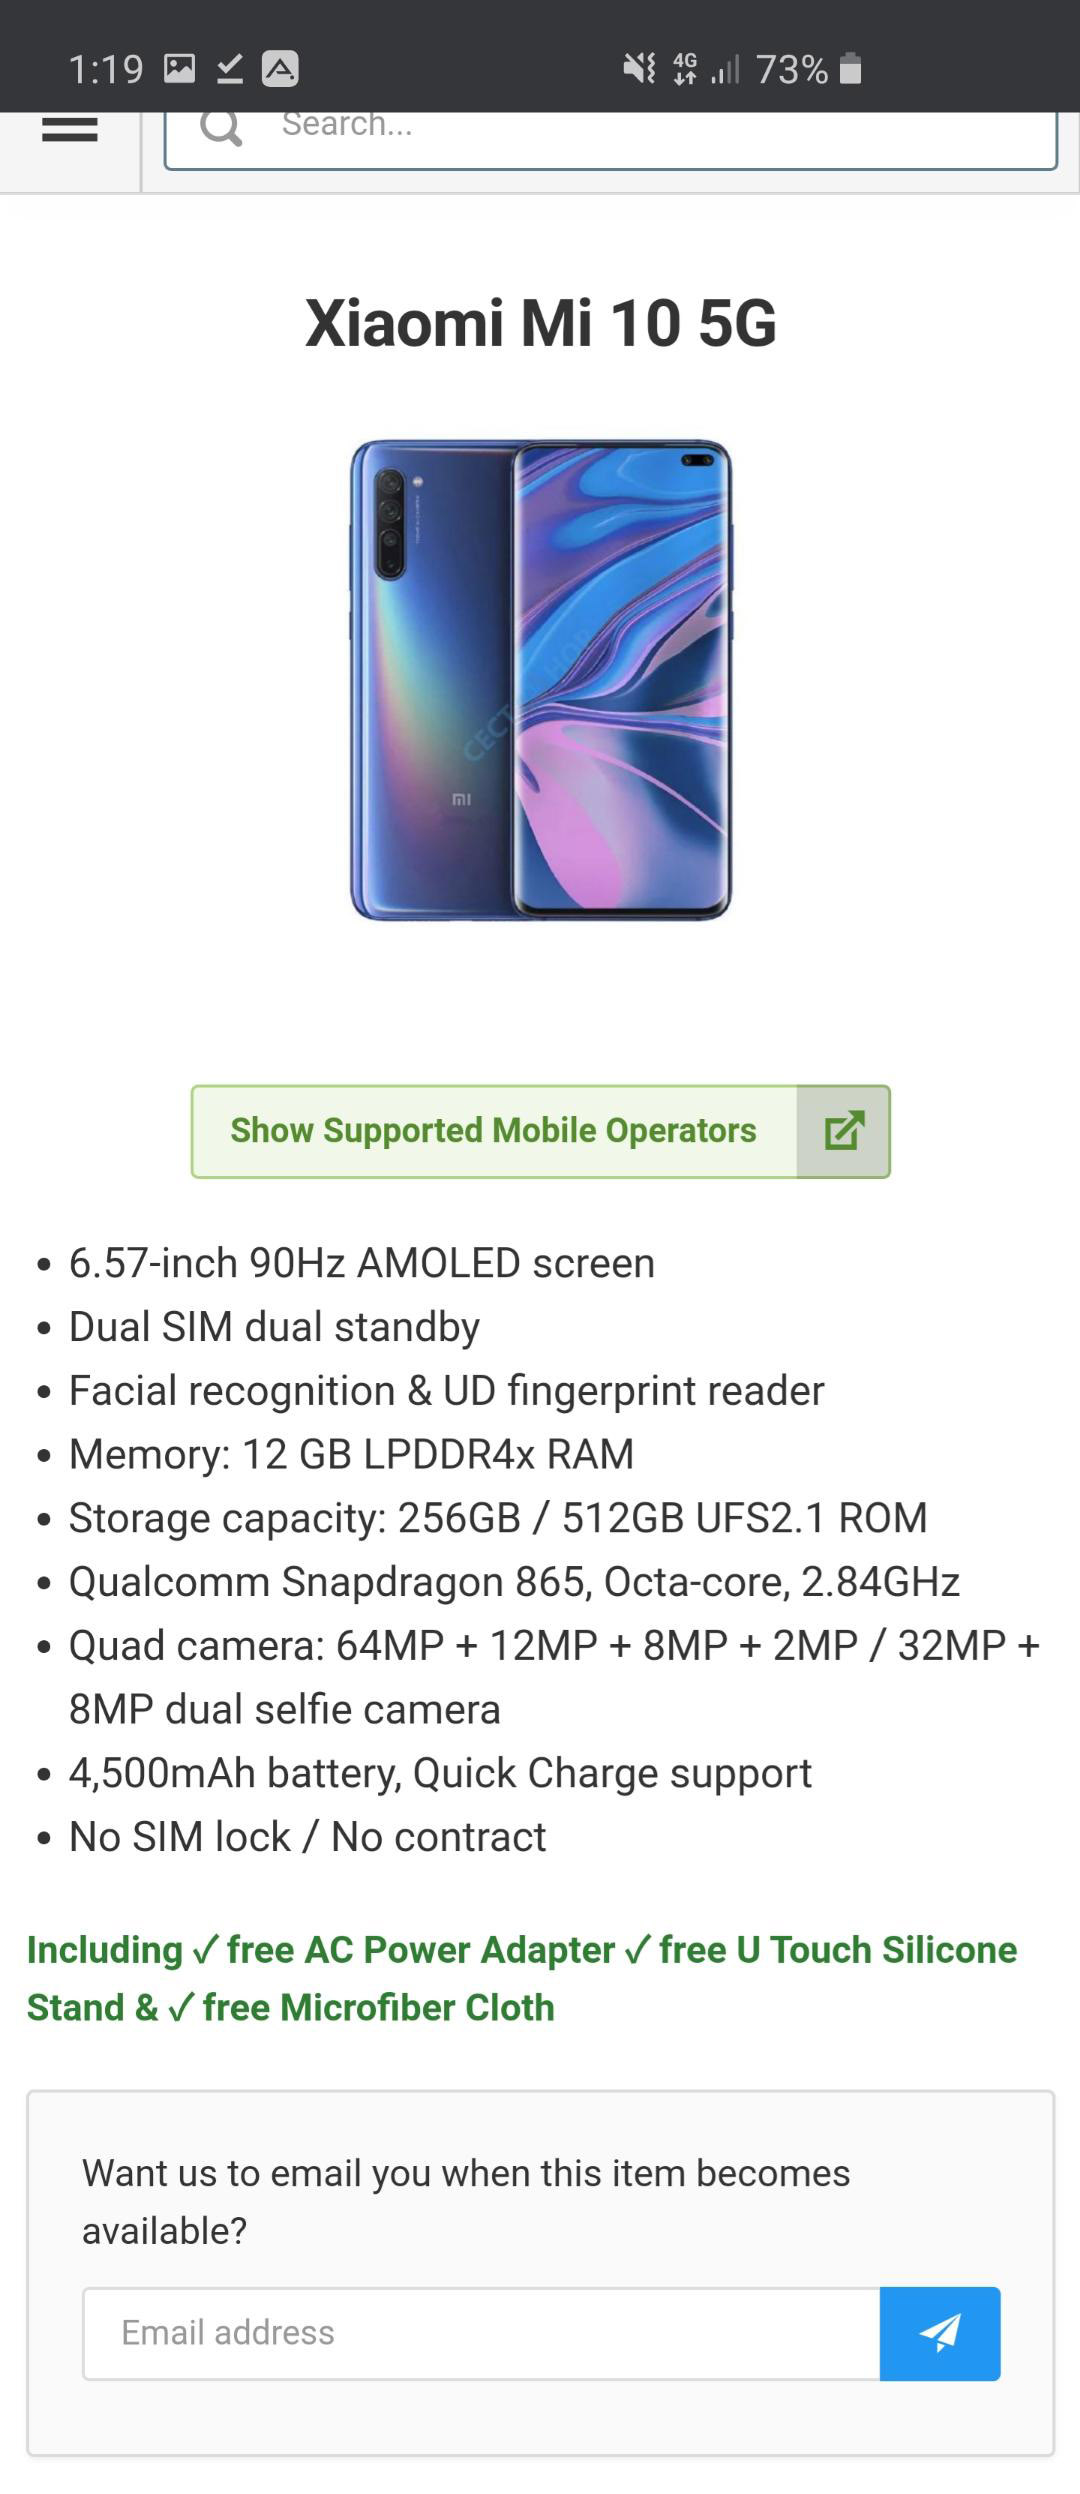 Xiaomi Mi 10 lộ toàn bộ thông số cấu hình với
Snapdragon 865, màn hình 90Hz, giá từ 15.5 triệu